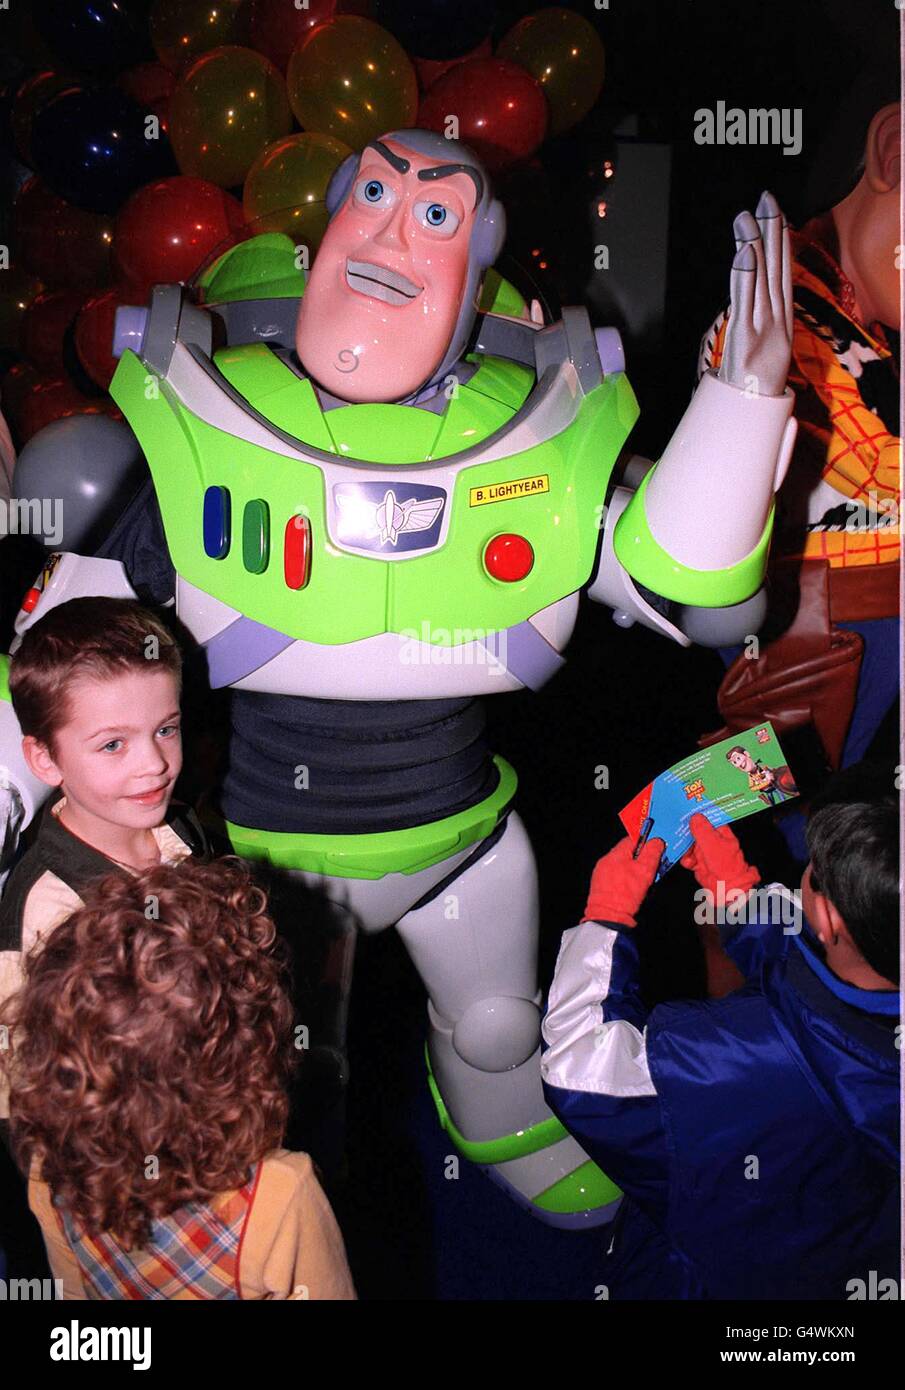 Le film « Buzz Lightyear » de Toy Story accueille de jeunes fans lors de la première du film britannique Toy Story 2 au Warner Village Cinema de Finchley, Londres. Banque D'Images